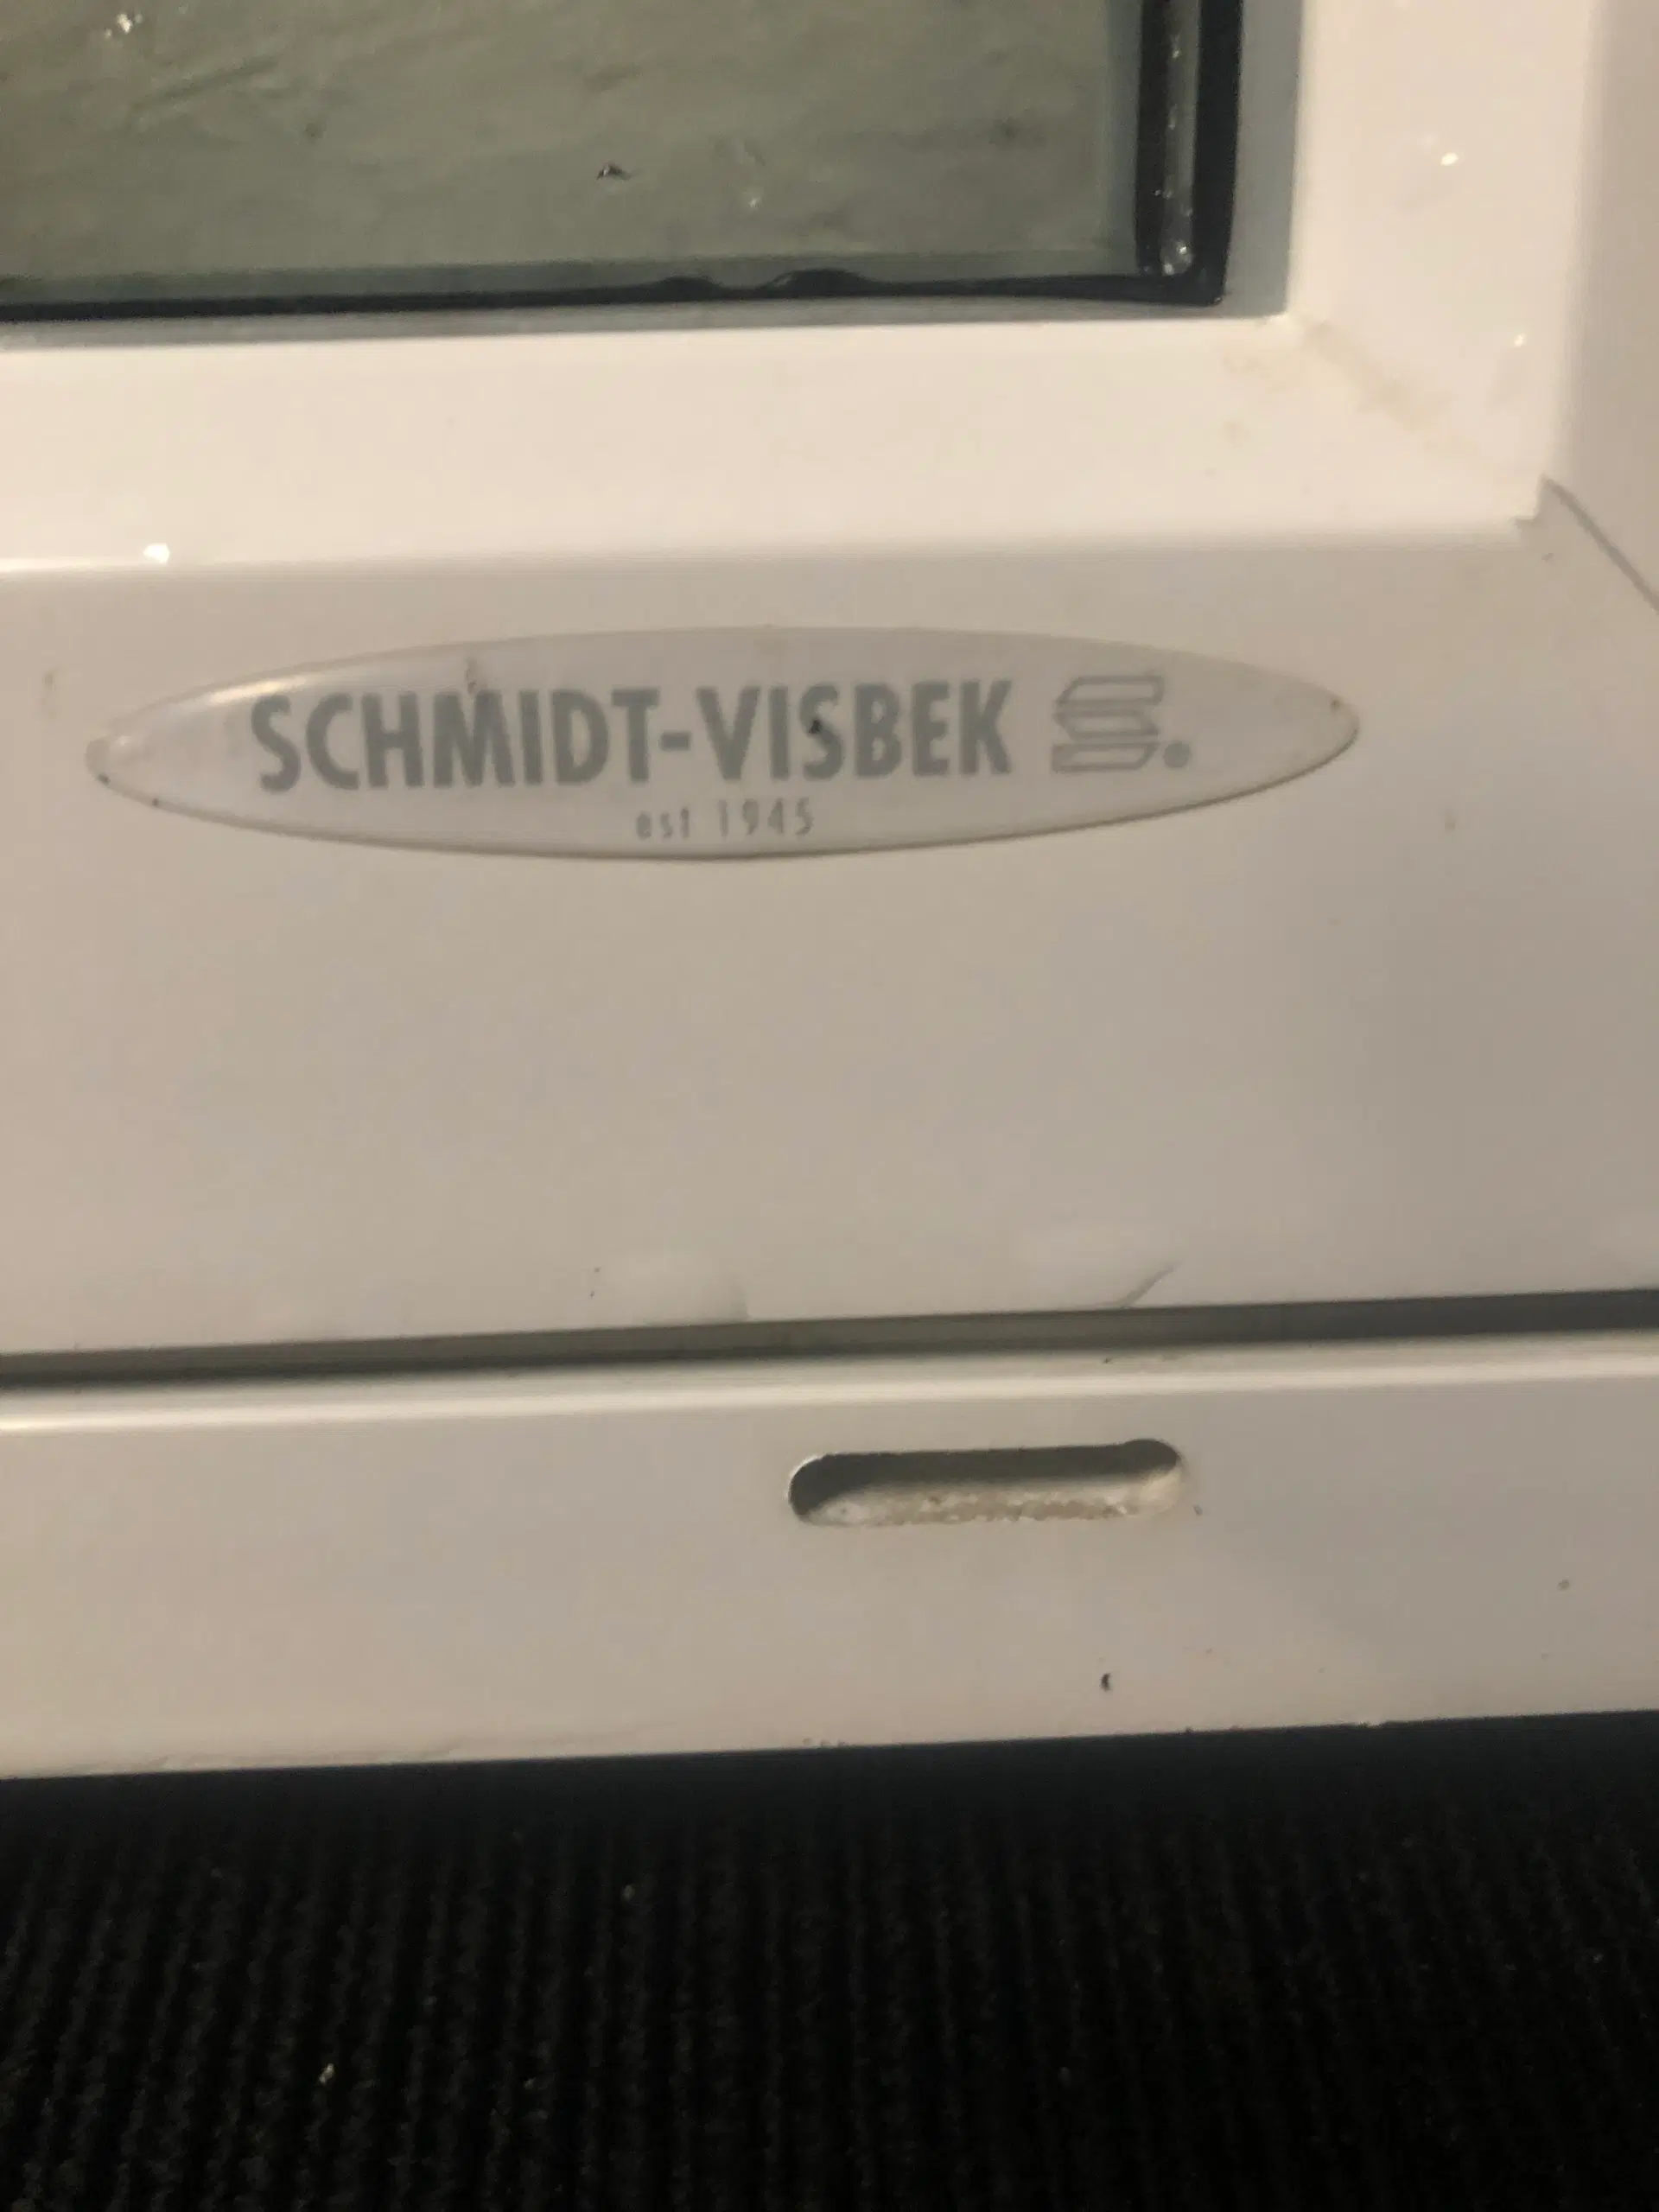 Schmidt-visbek sidehængt vindue i pvc 1288x120x1180 mm hvid